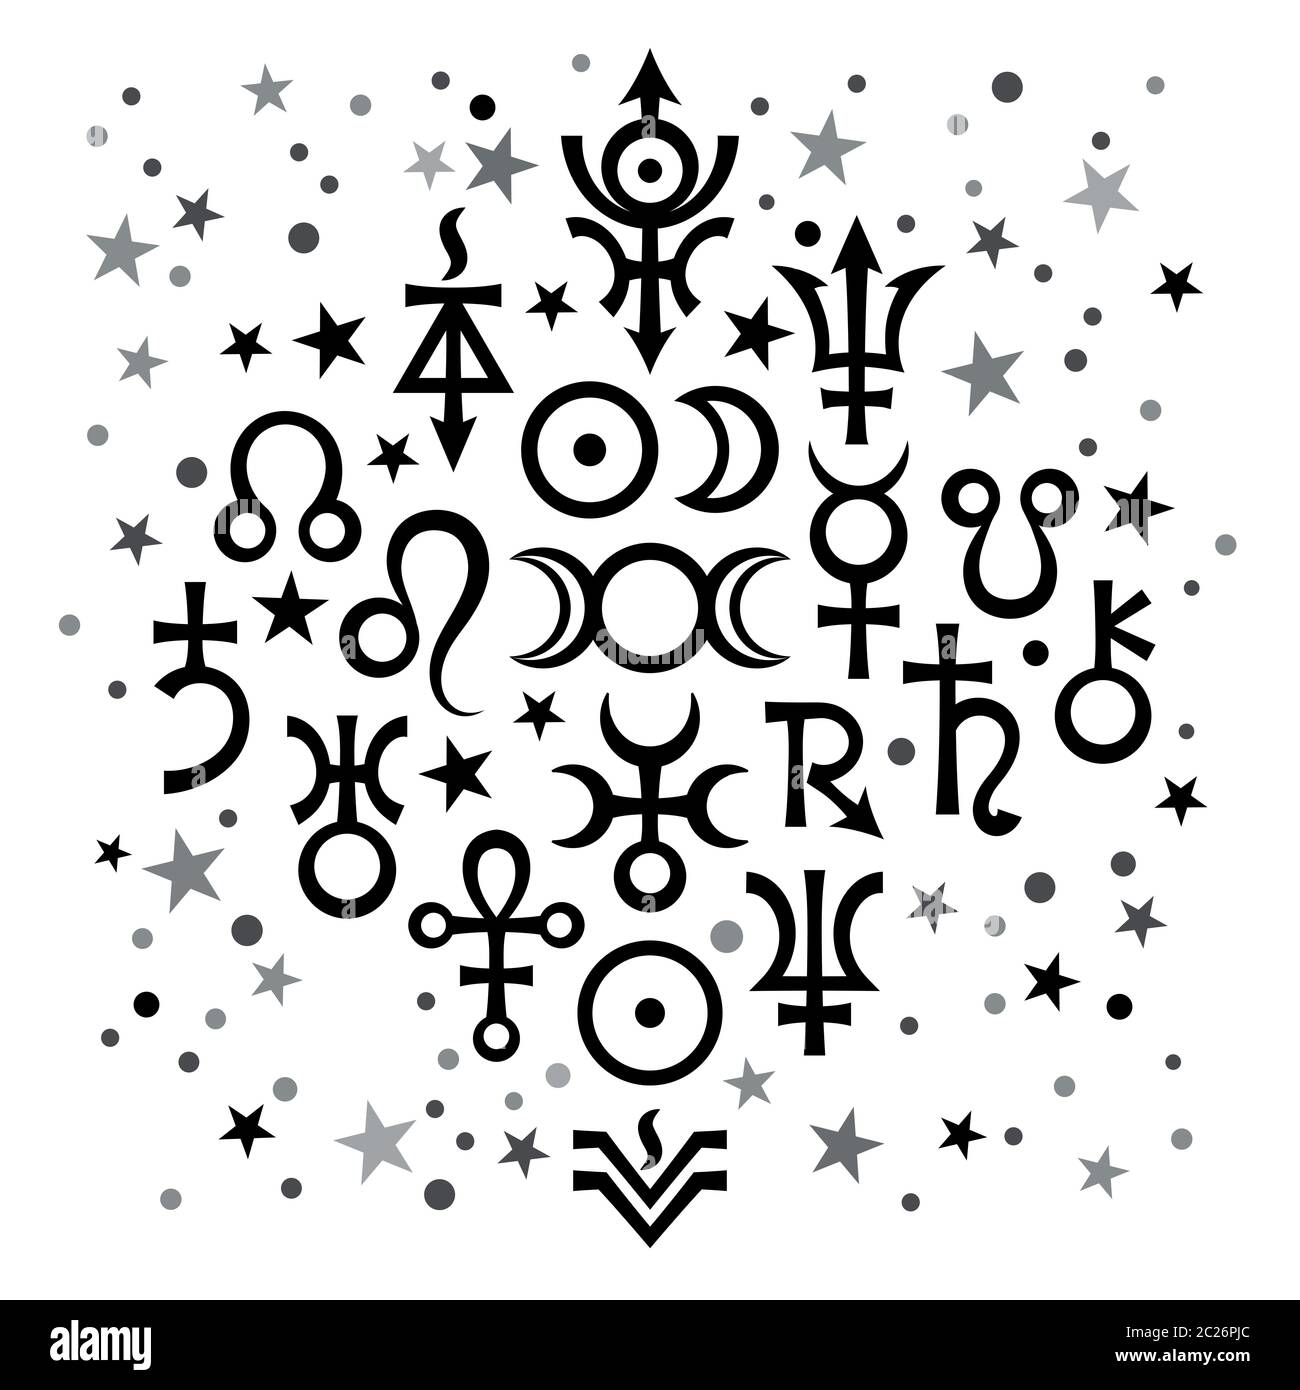 Set astrologico №20 (segni astrologici e simboli mistici occulti), sfondo celeste bianco e nero con stelle Foto Stock